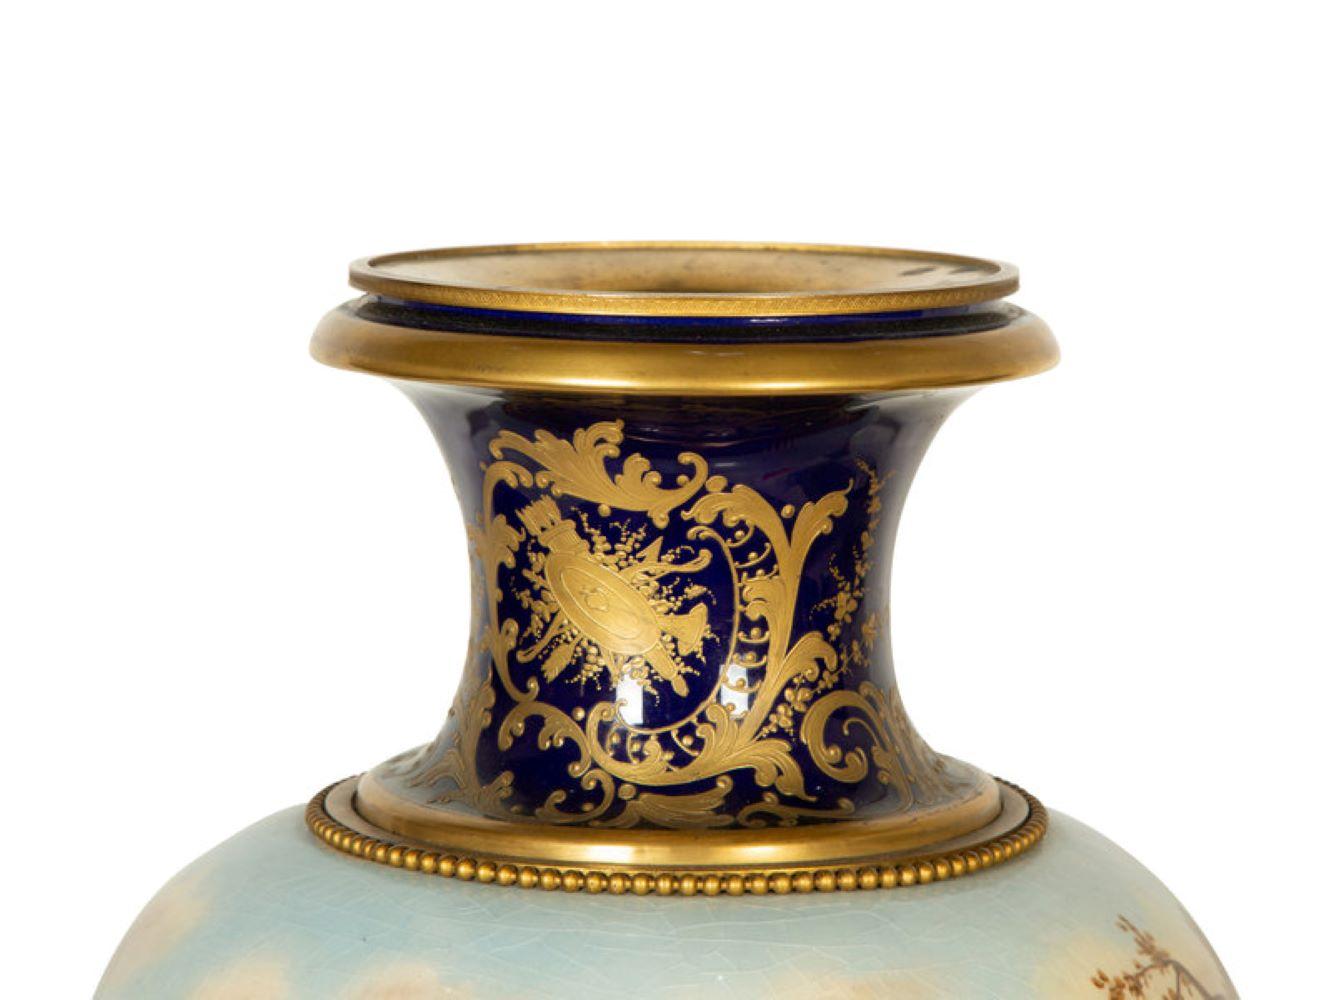 Grande urne en porcelaine de style Sèvres reposant sur un socle en bronze. France, vers 1880.
Mesures : Hauteur 25